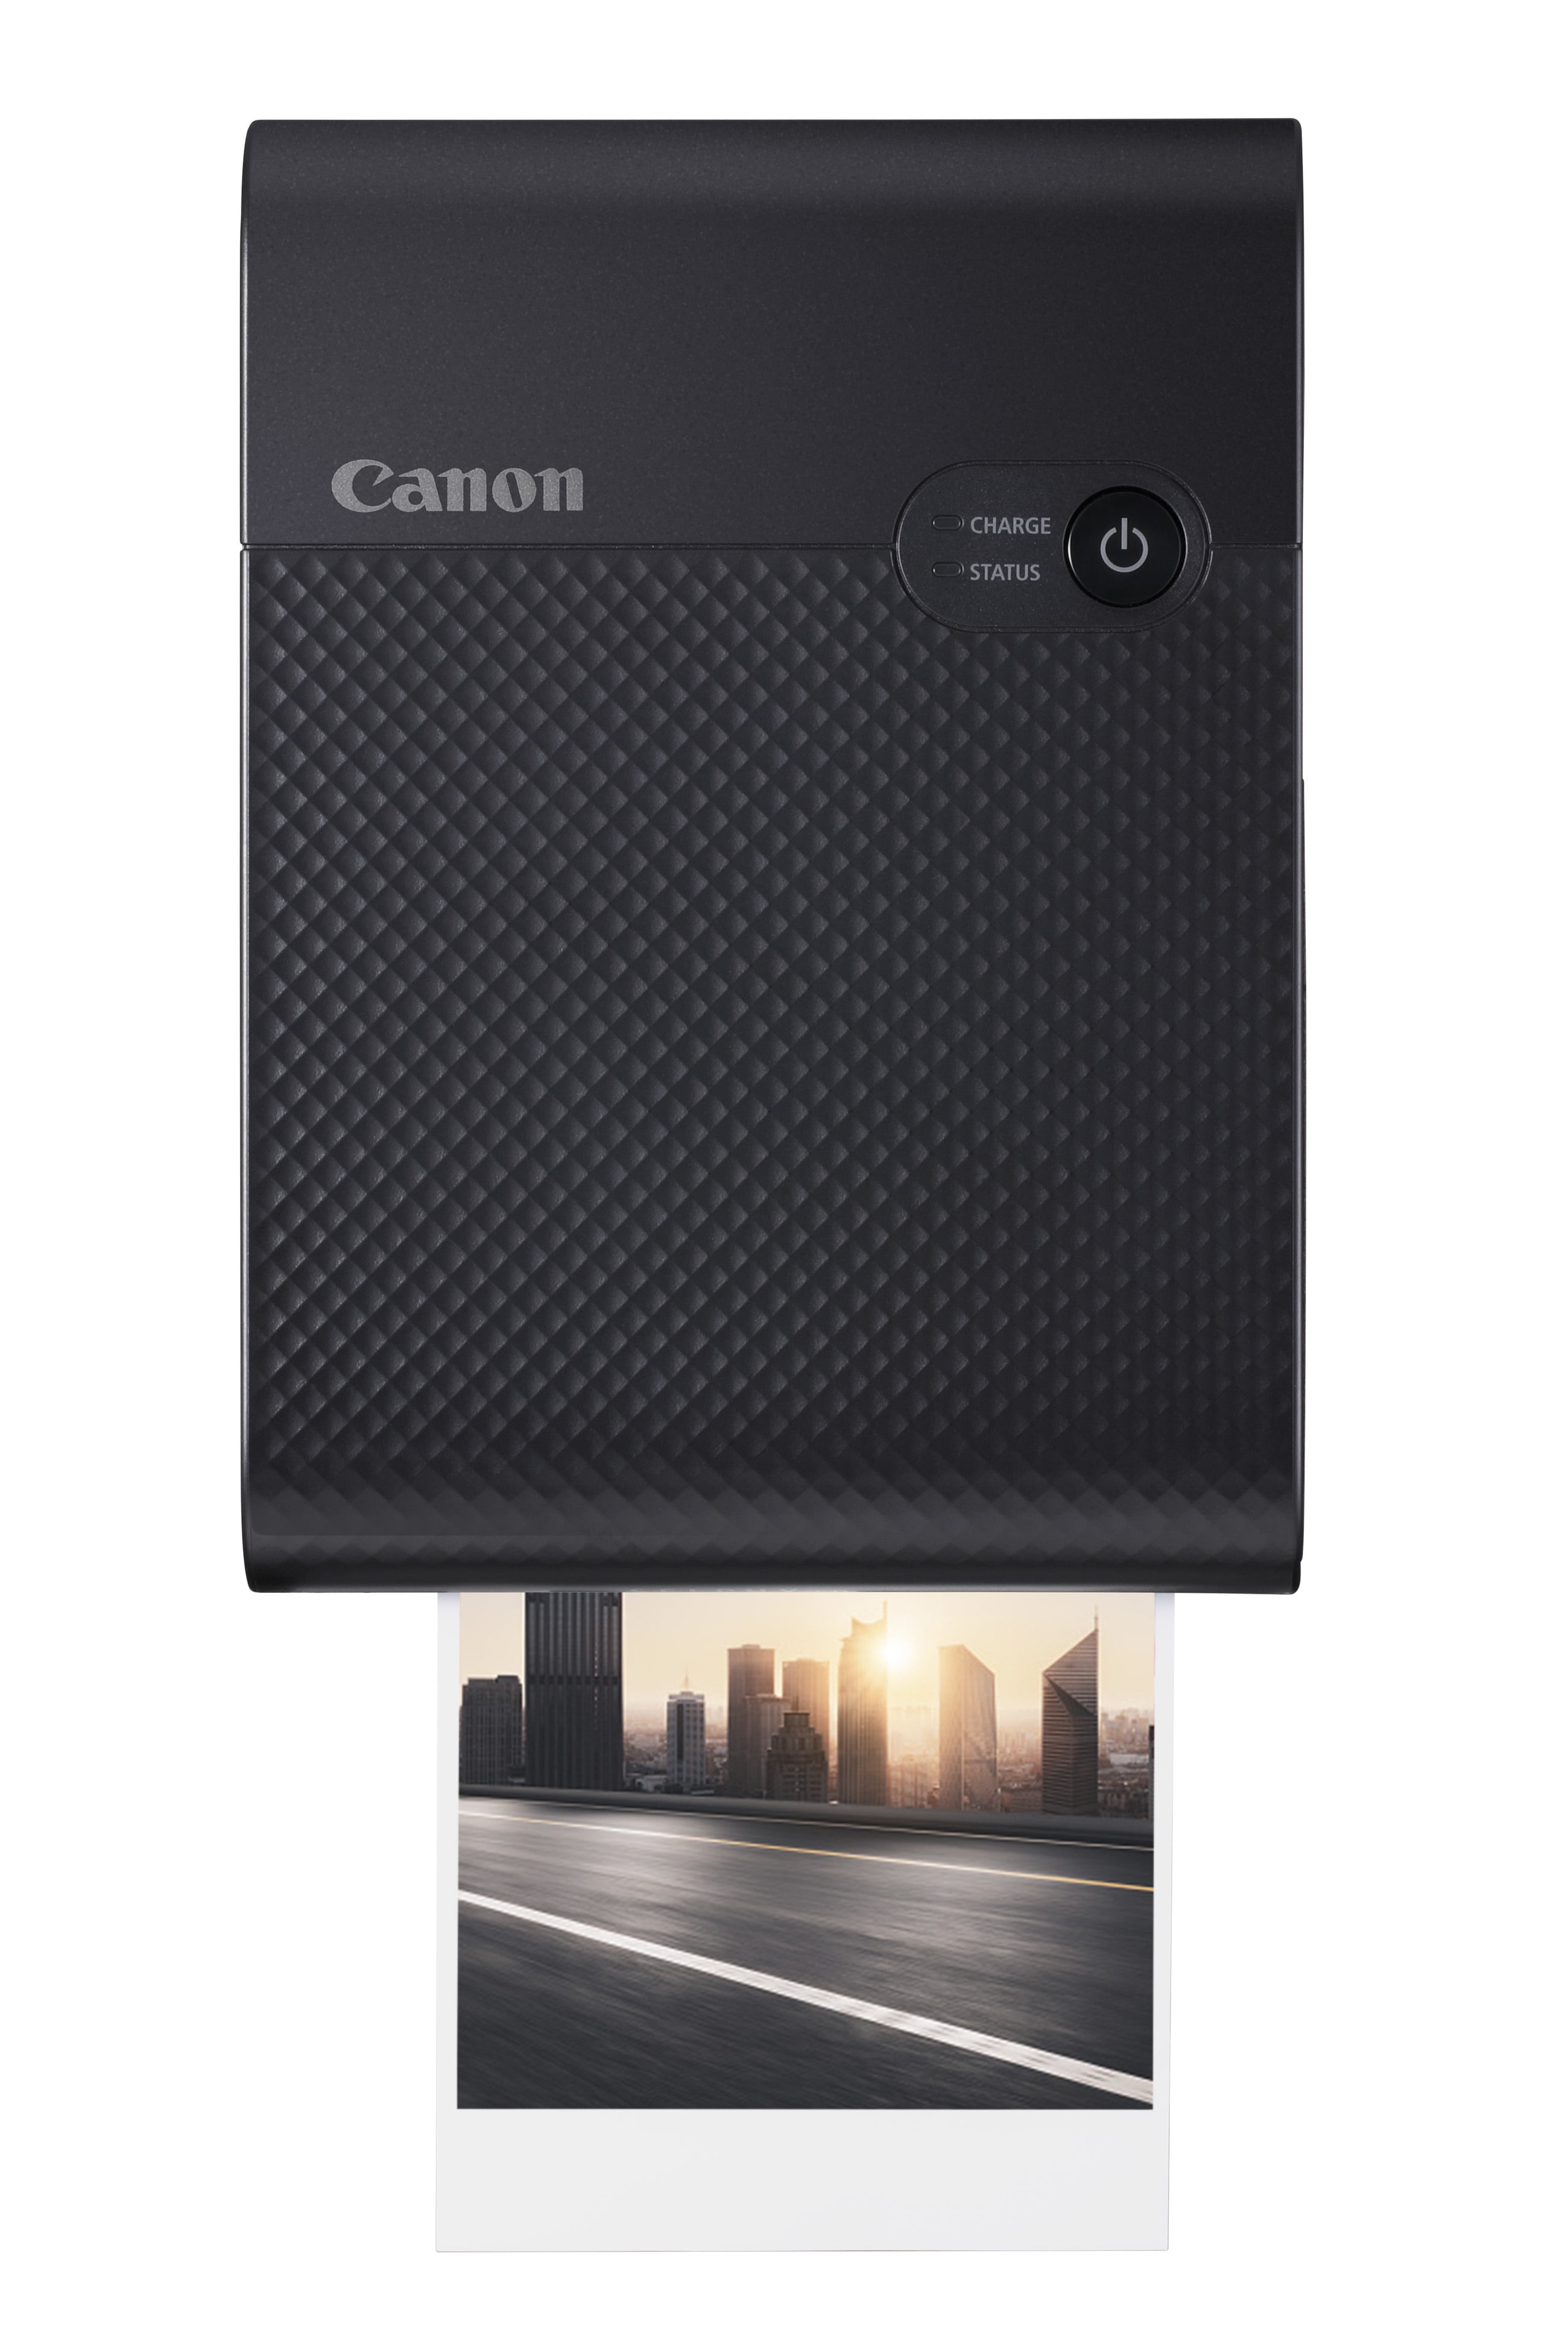 Canon SELPHY Square QX10 Wireless Photo Printer - Black